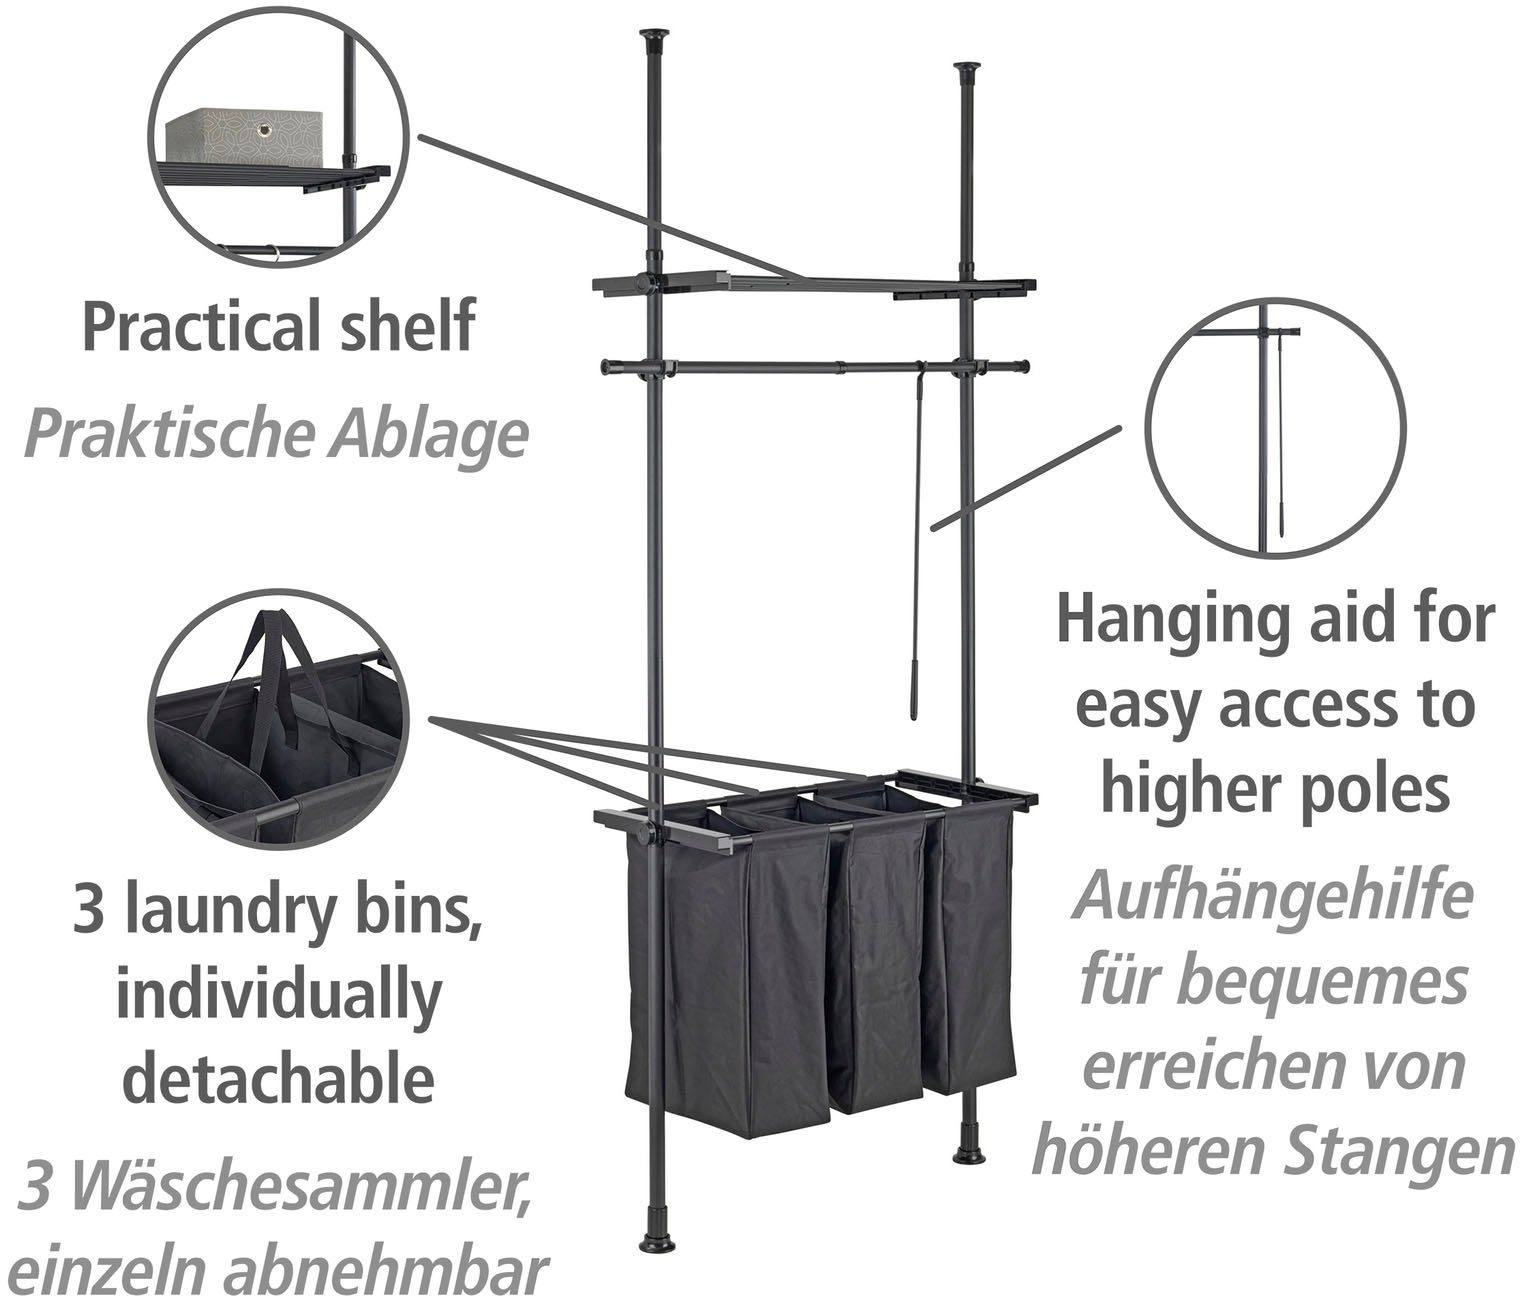 WENKO Wäschesortierer Bohren, einfaches Herkules ohne 3 Wäschefächer (Teleskopsystem), Einklemmen, Befestigung